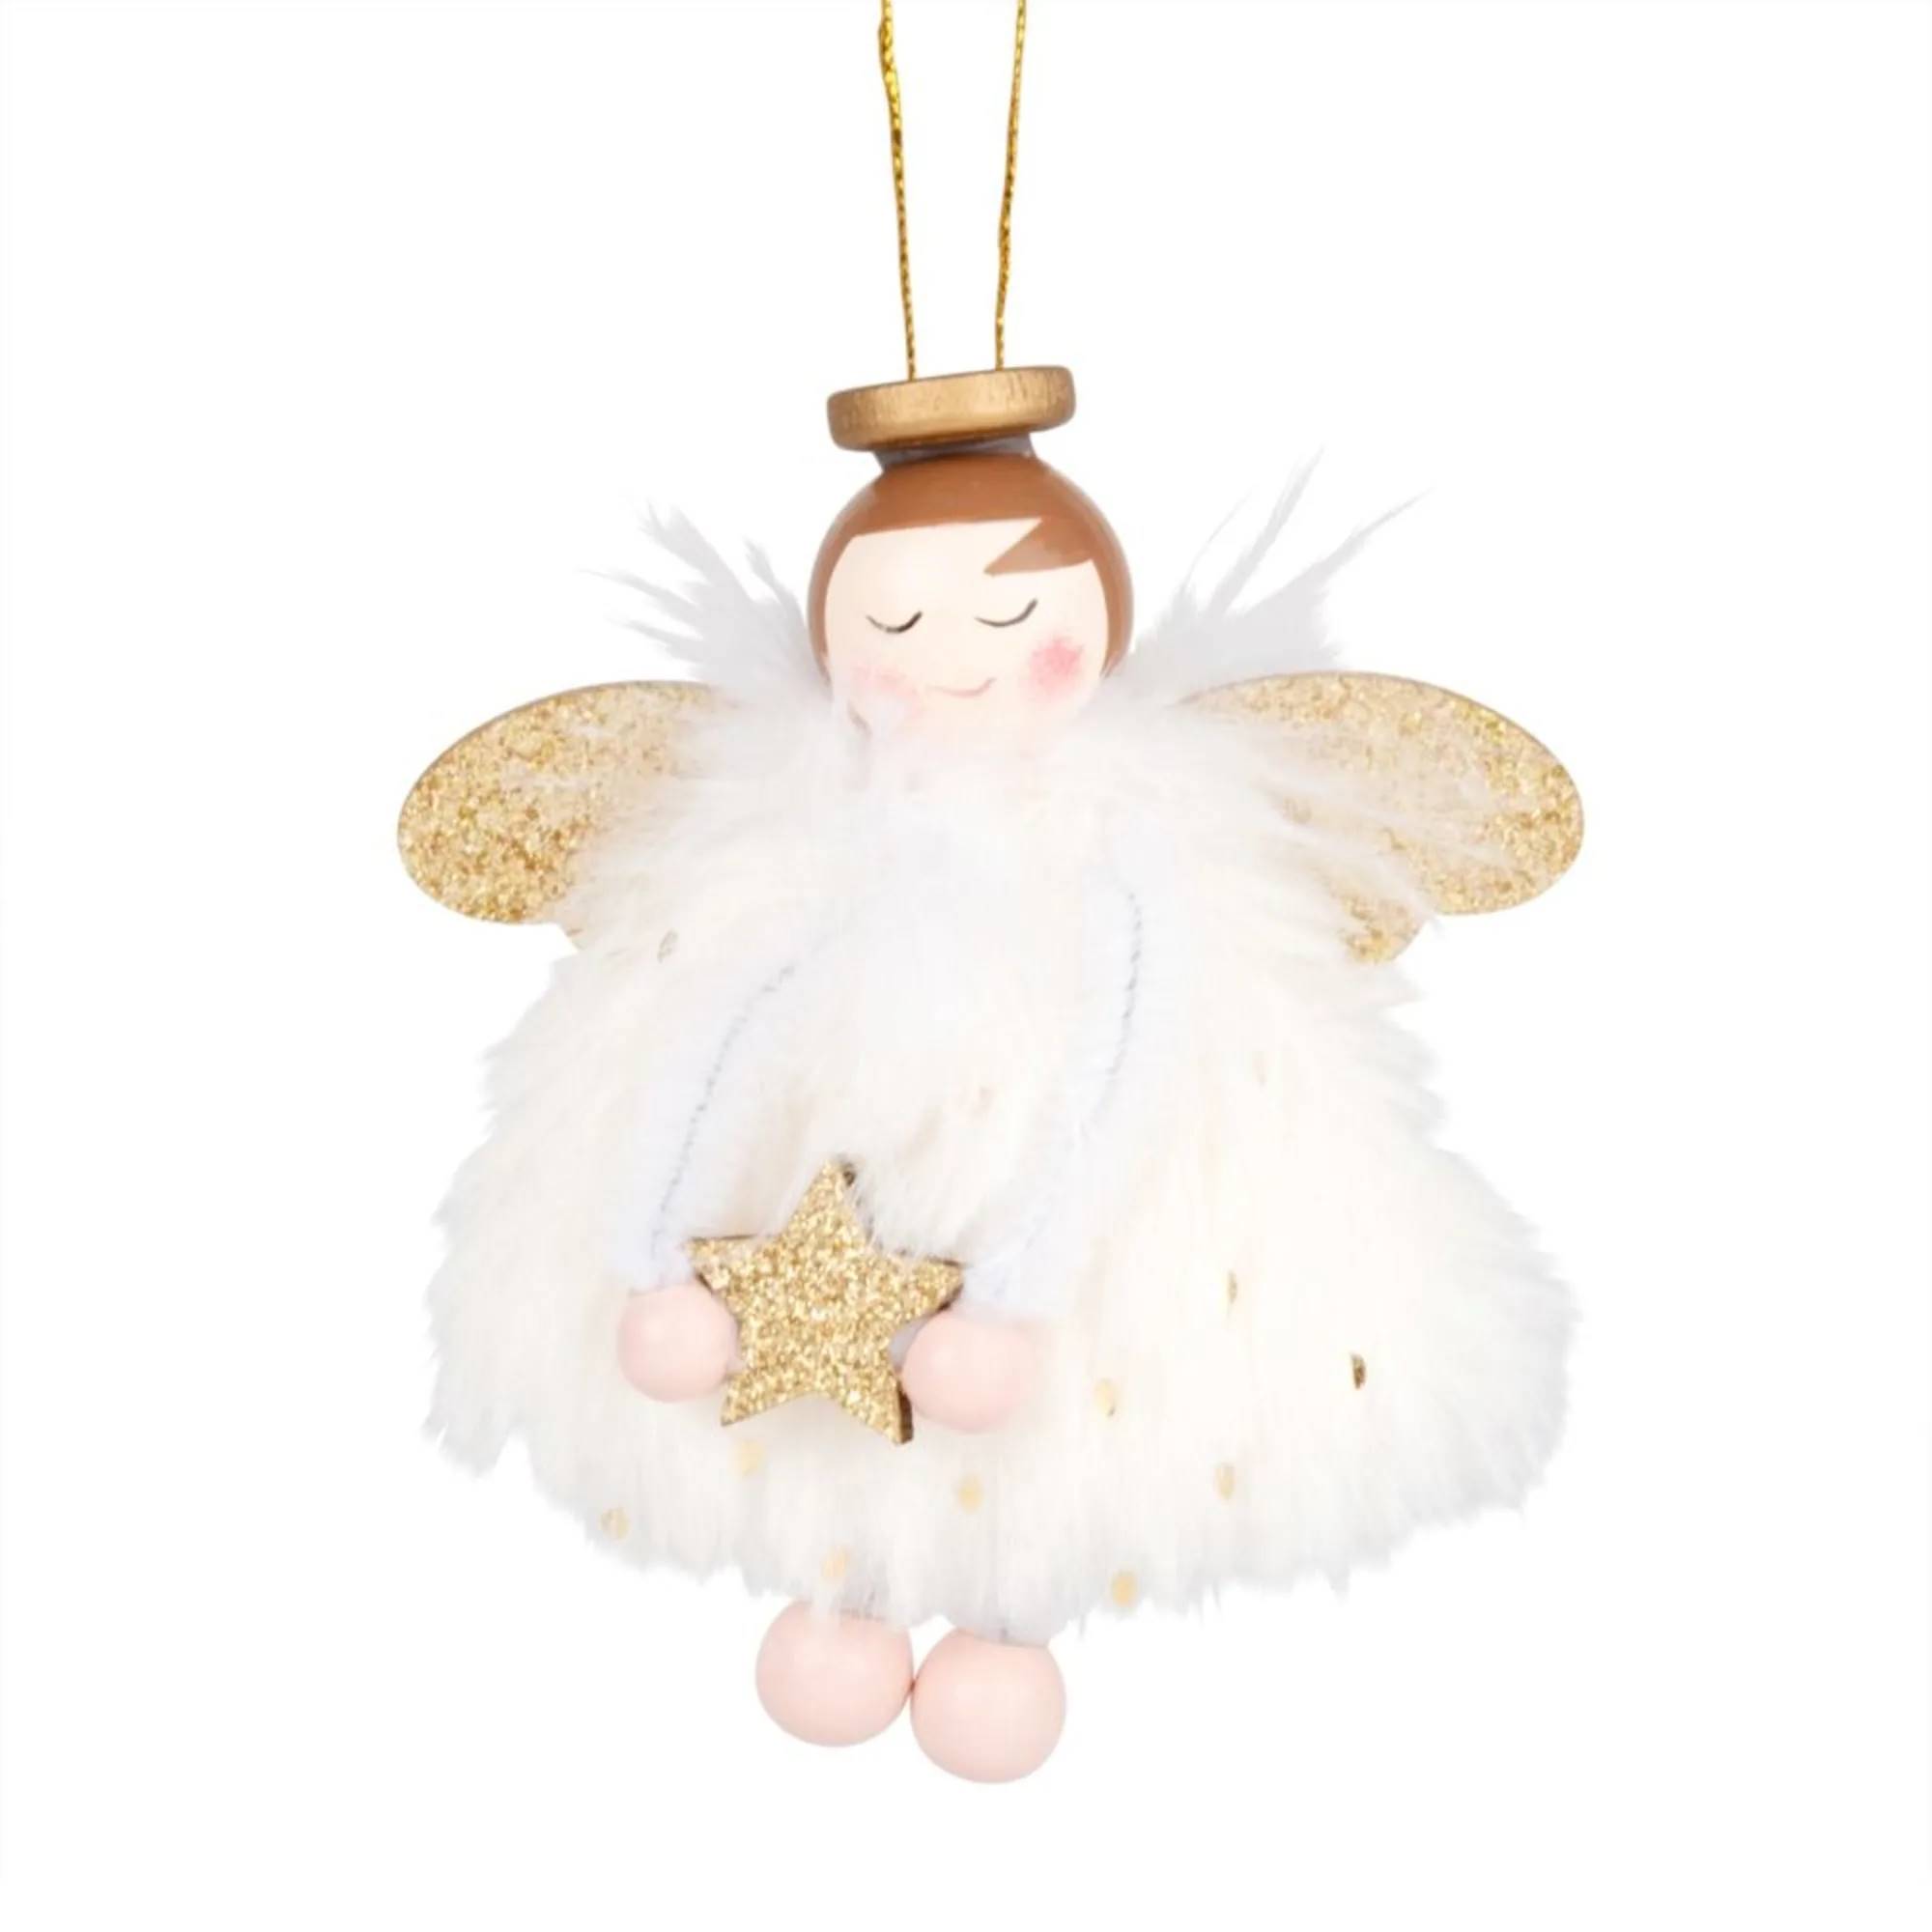 adorno-de-navidad-de-angel-blanco-y-dorado-1000-0-31-196503_1 mdm